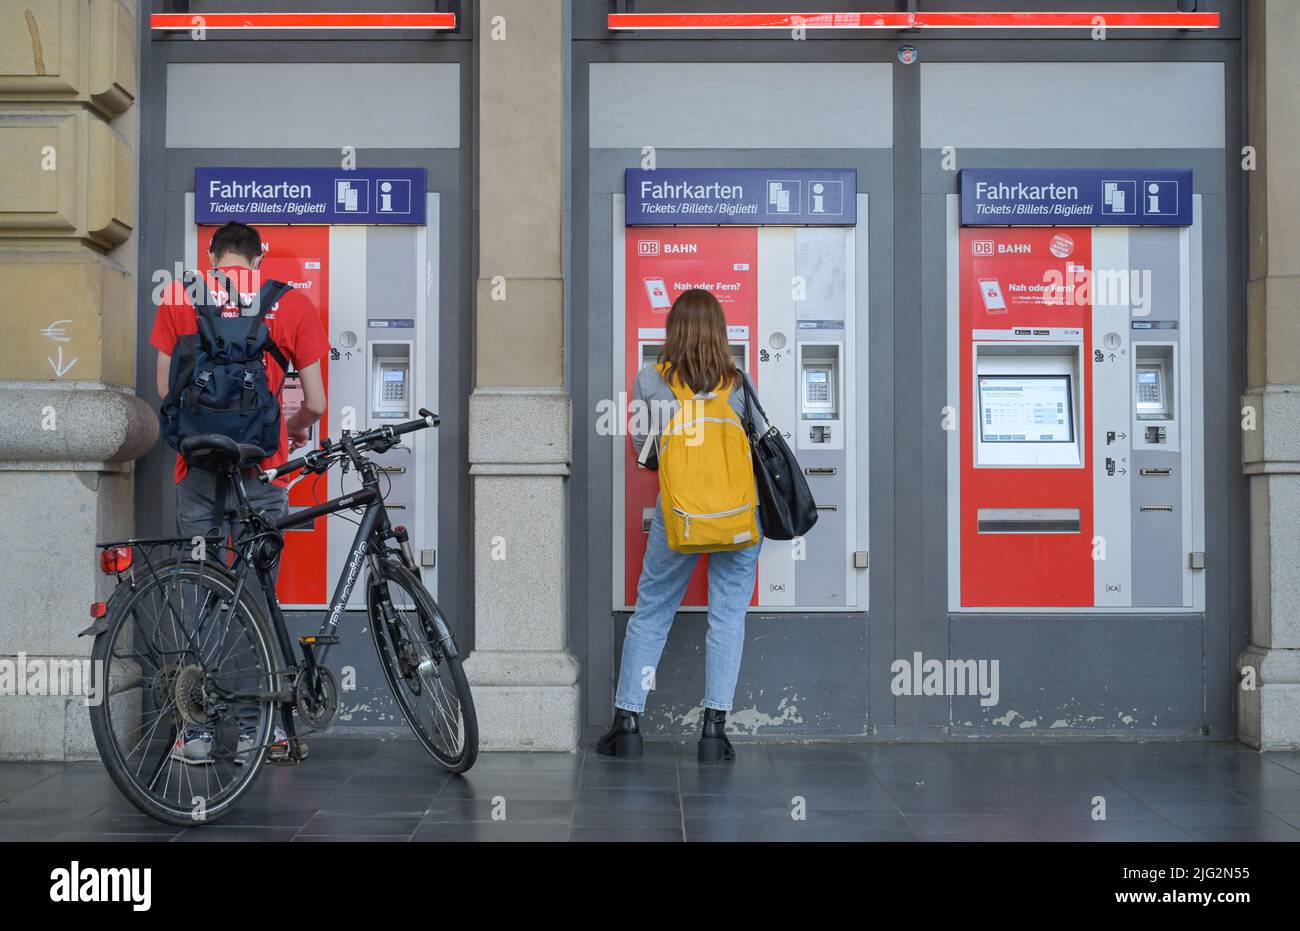 Fahrkartenautomaten, Hauptbahnhof, Frankfurt am Main, Hessen, Deutschland Stock Photo